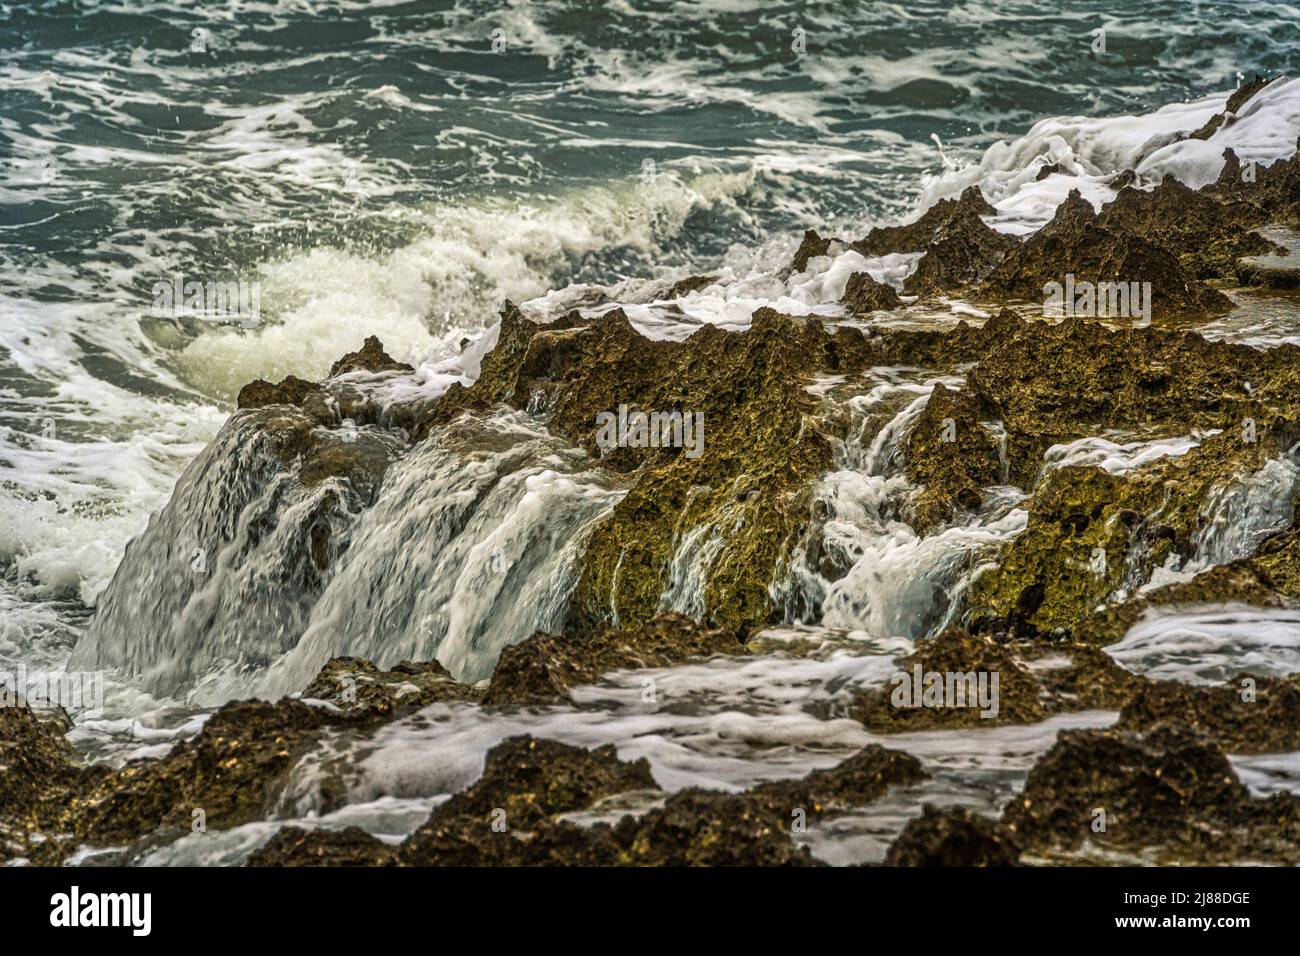 Le onde del mare mosso dopo giorni di pioggia e vento si scontrano con le coste rocciose del Gargano in Puglia. Puglia, Italia, Europa Foto Stock